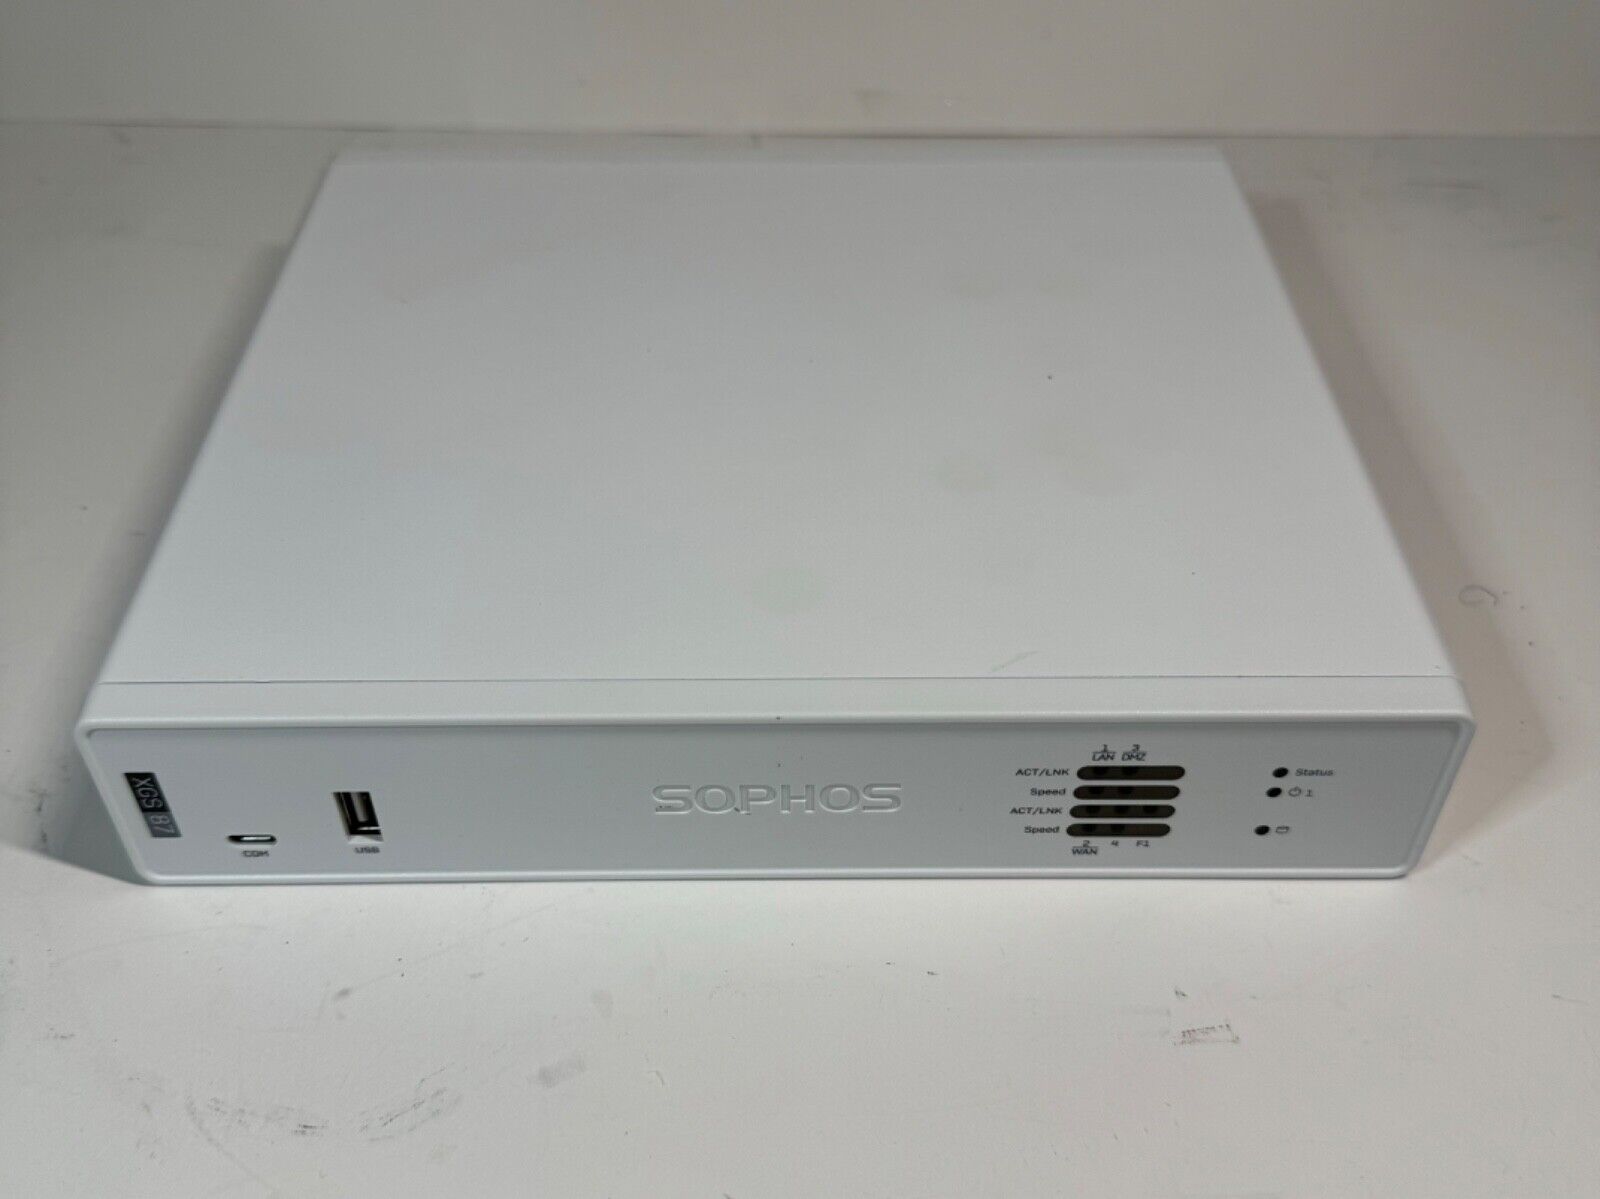 Sophos XGS 87 Network Security Appliance Desktop Firewall Appliance Rev 1